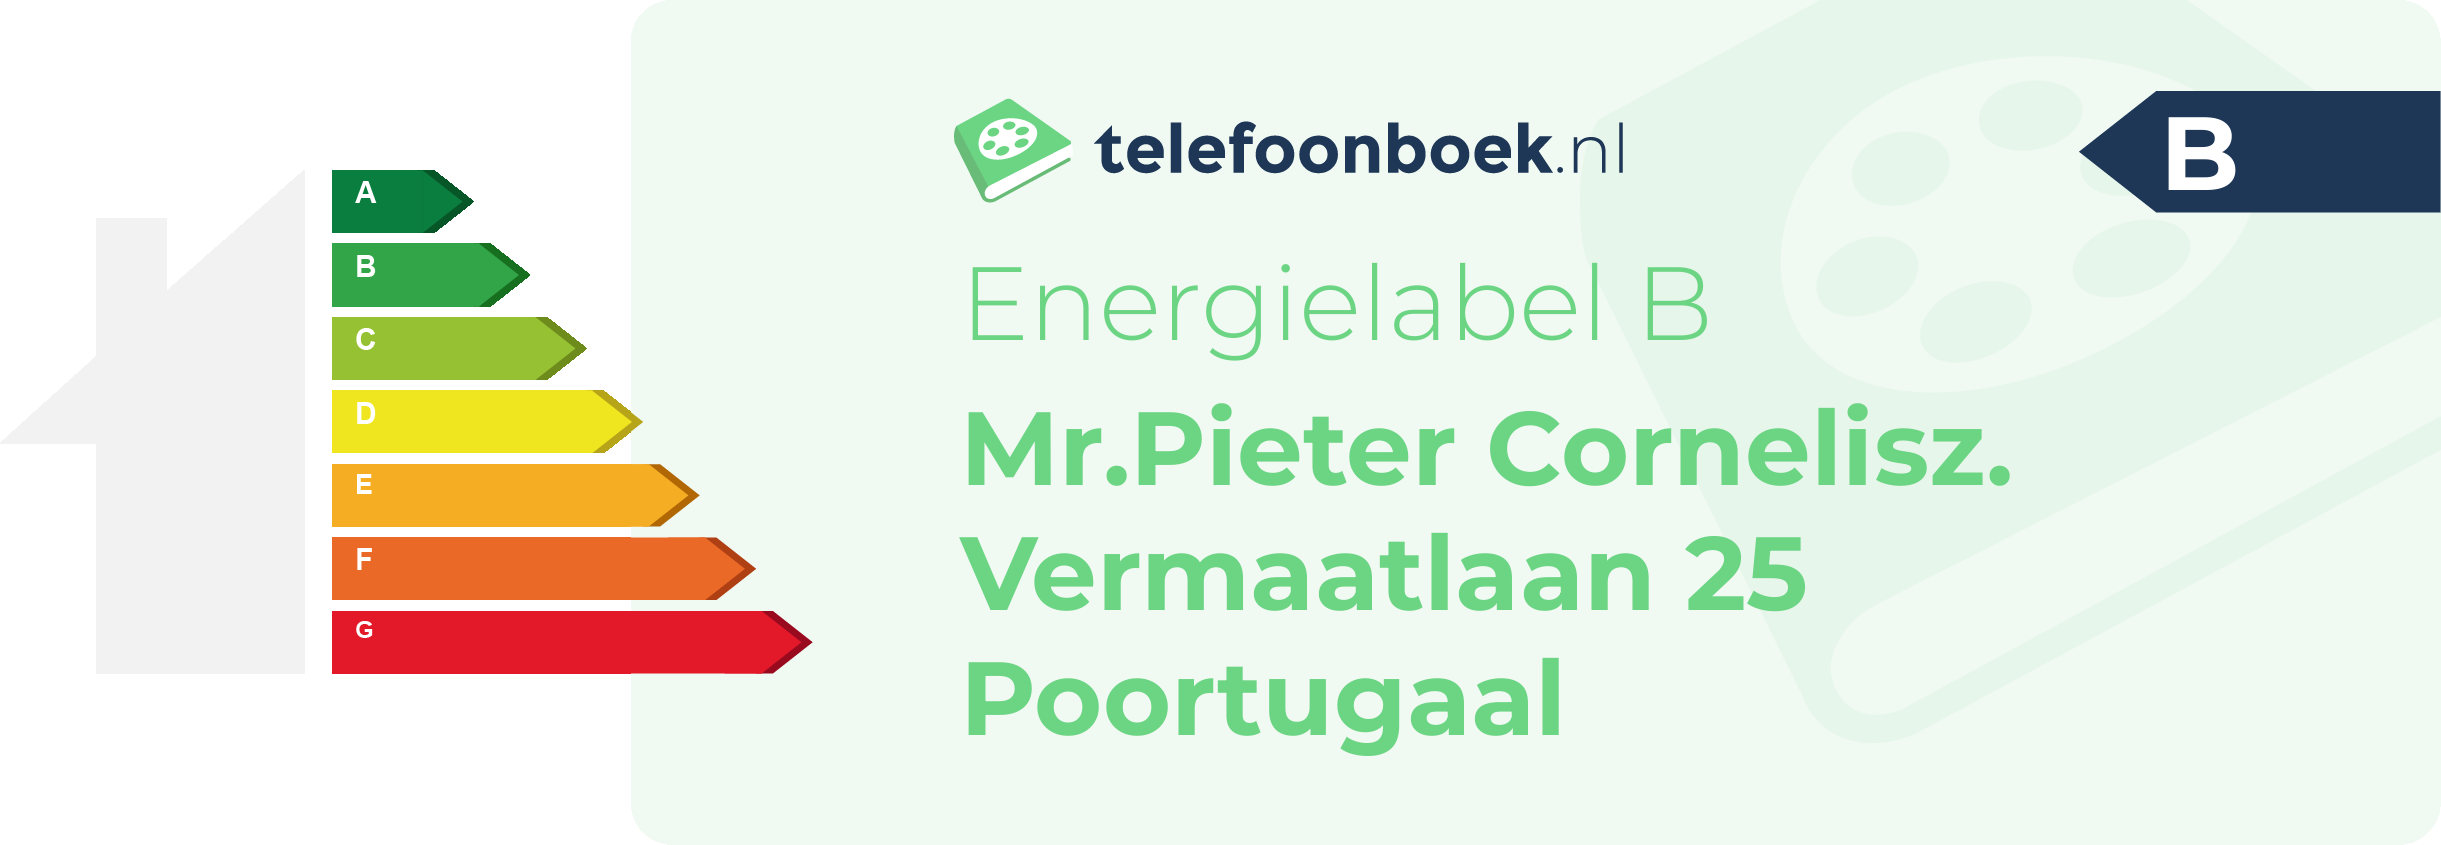 Energielabel Mr.Pieter Cornelisz. Vermaatlaan 25 Poortugaal